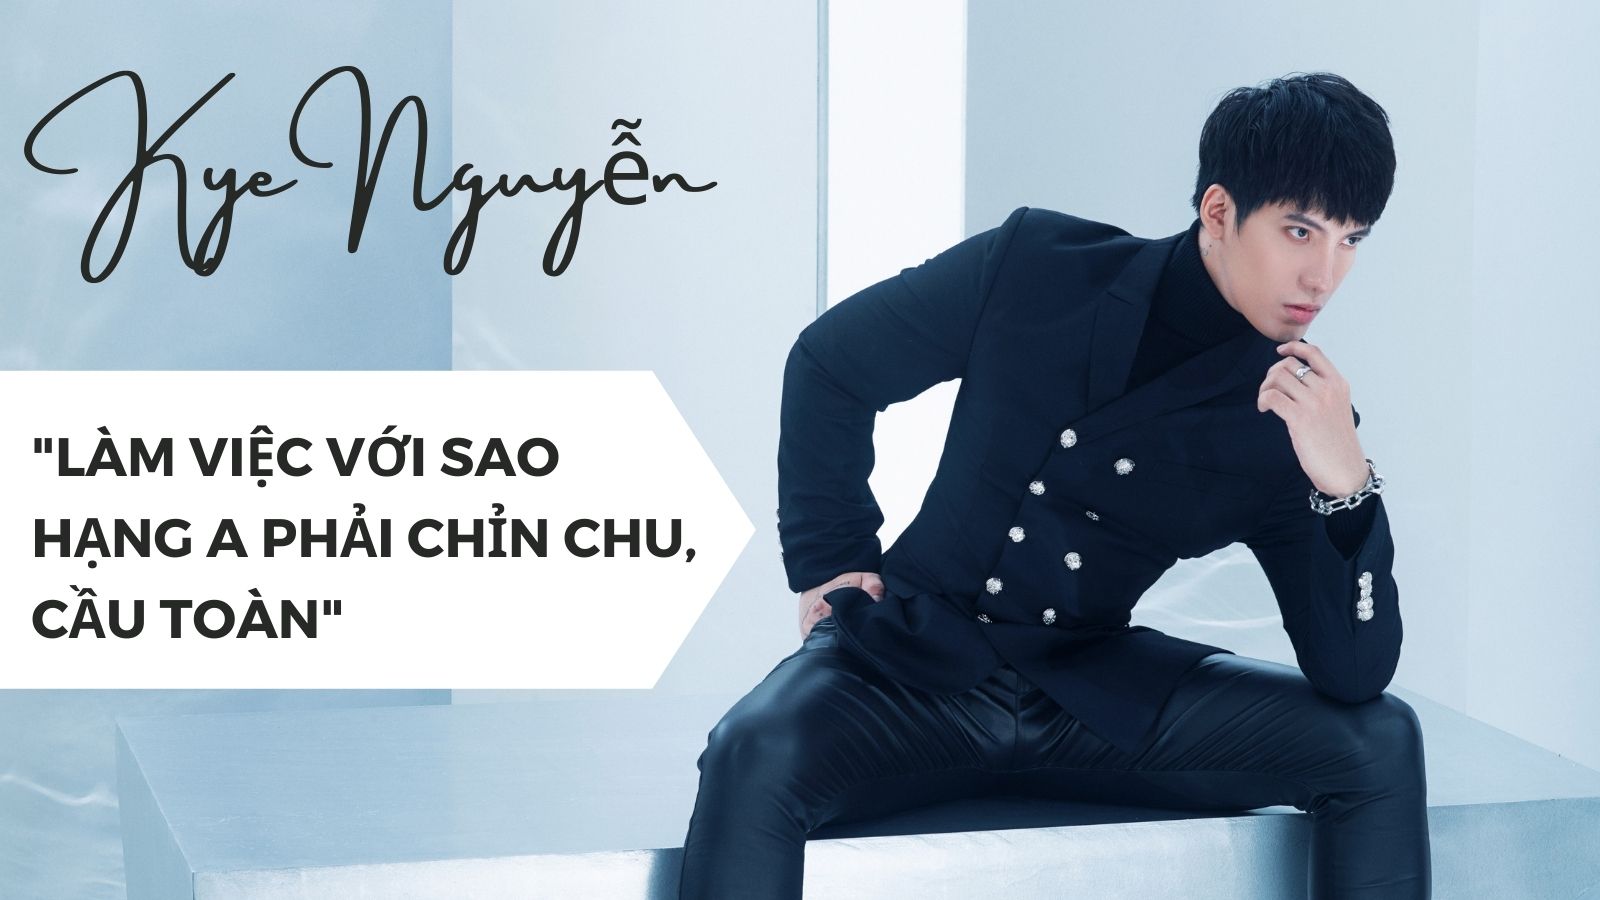 Giám đốc sáng tạo Kye Nguyễn: &#34;Làm việc với sao hạng A phải cầu toàn, chỉn chu&#34; - 1